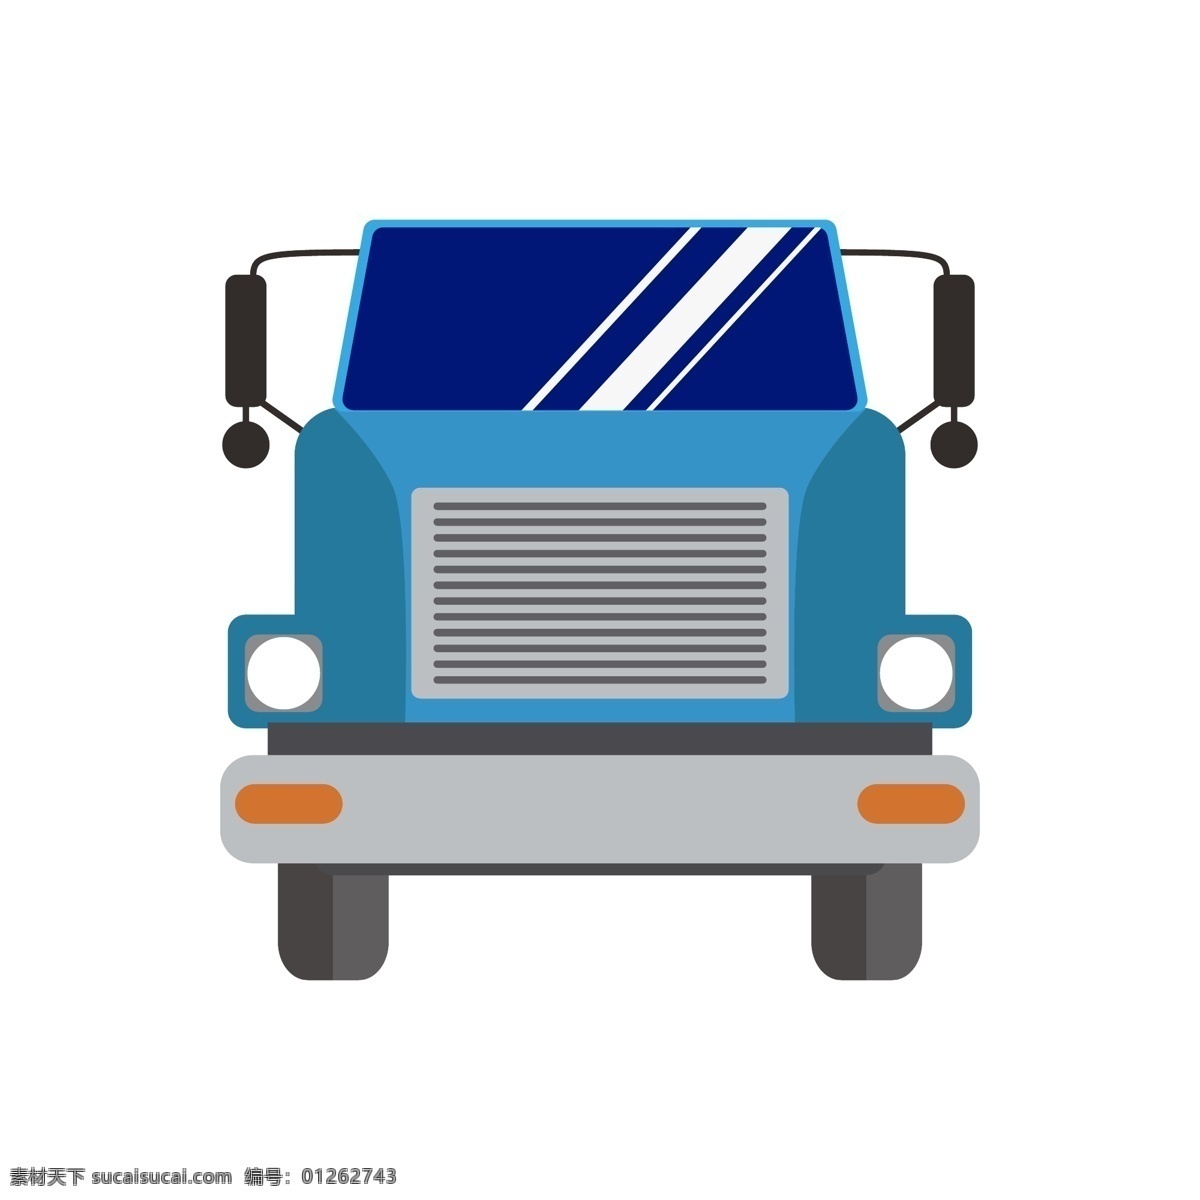 蓝色 货车 装饰 插画 ppt装饰 幻灯片装饰 卡通装饰插画 货车装饰 蓝色的货车